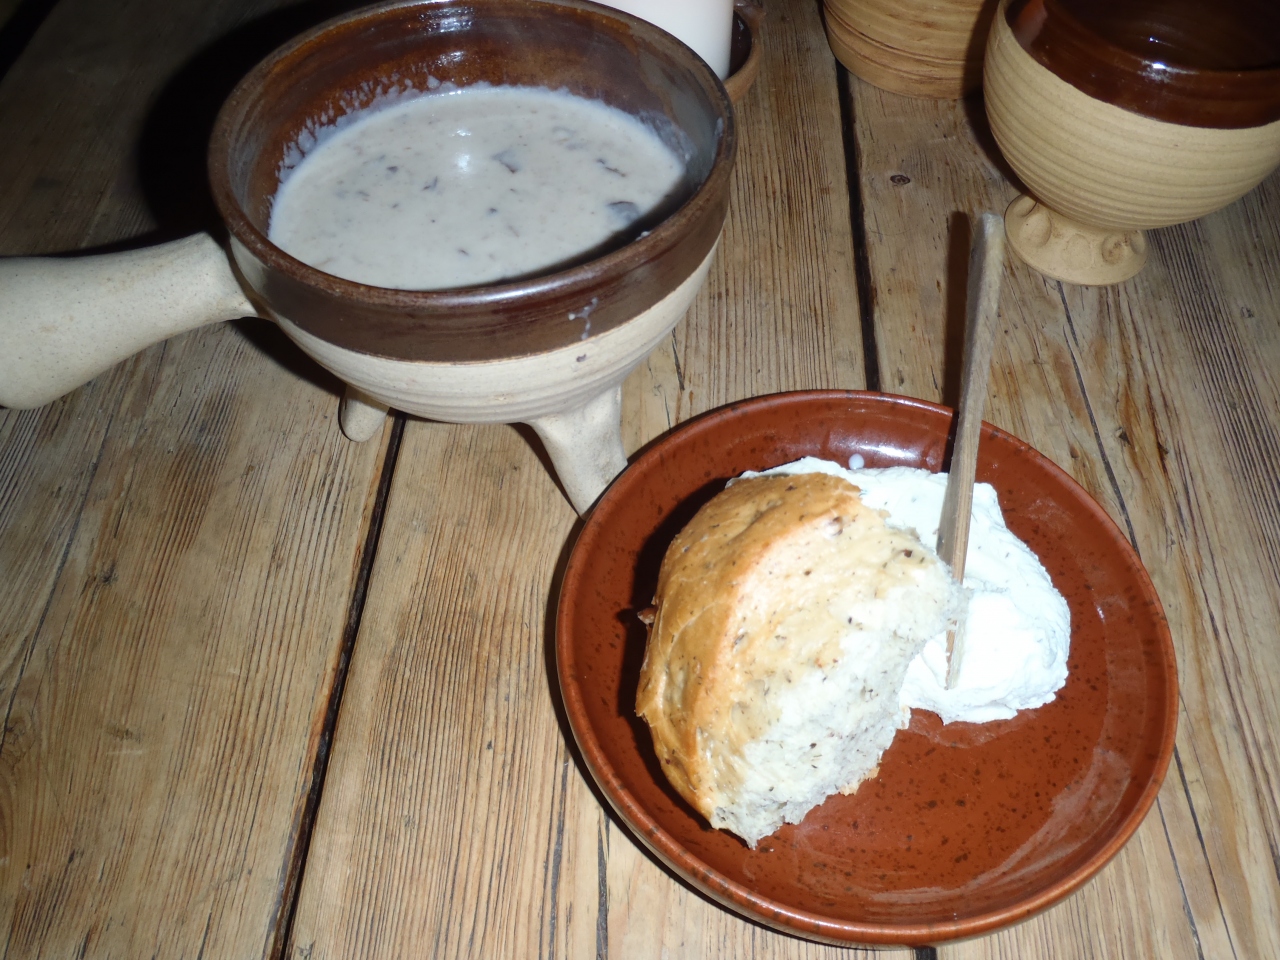 15 夕食 中世料理にありつく タリン エストニア の旅行記 ブログ By Binchanさん フォートラベル